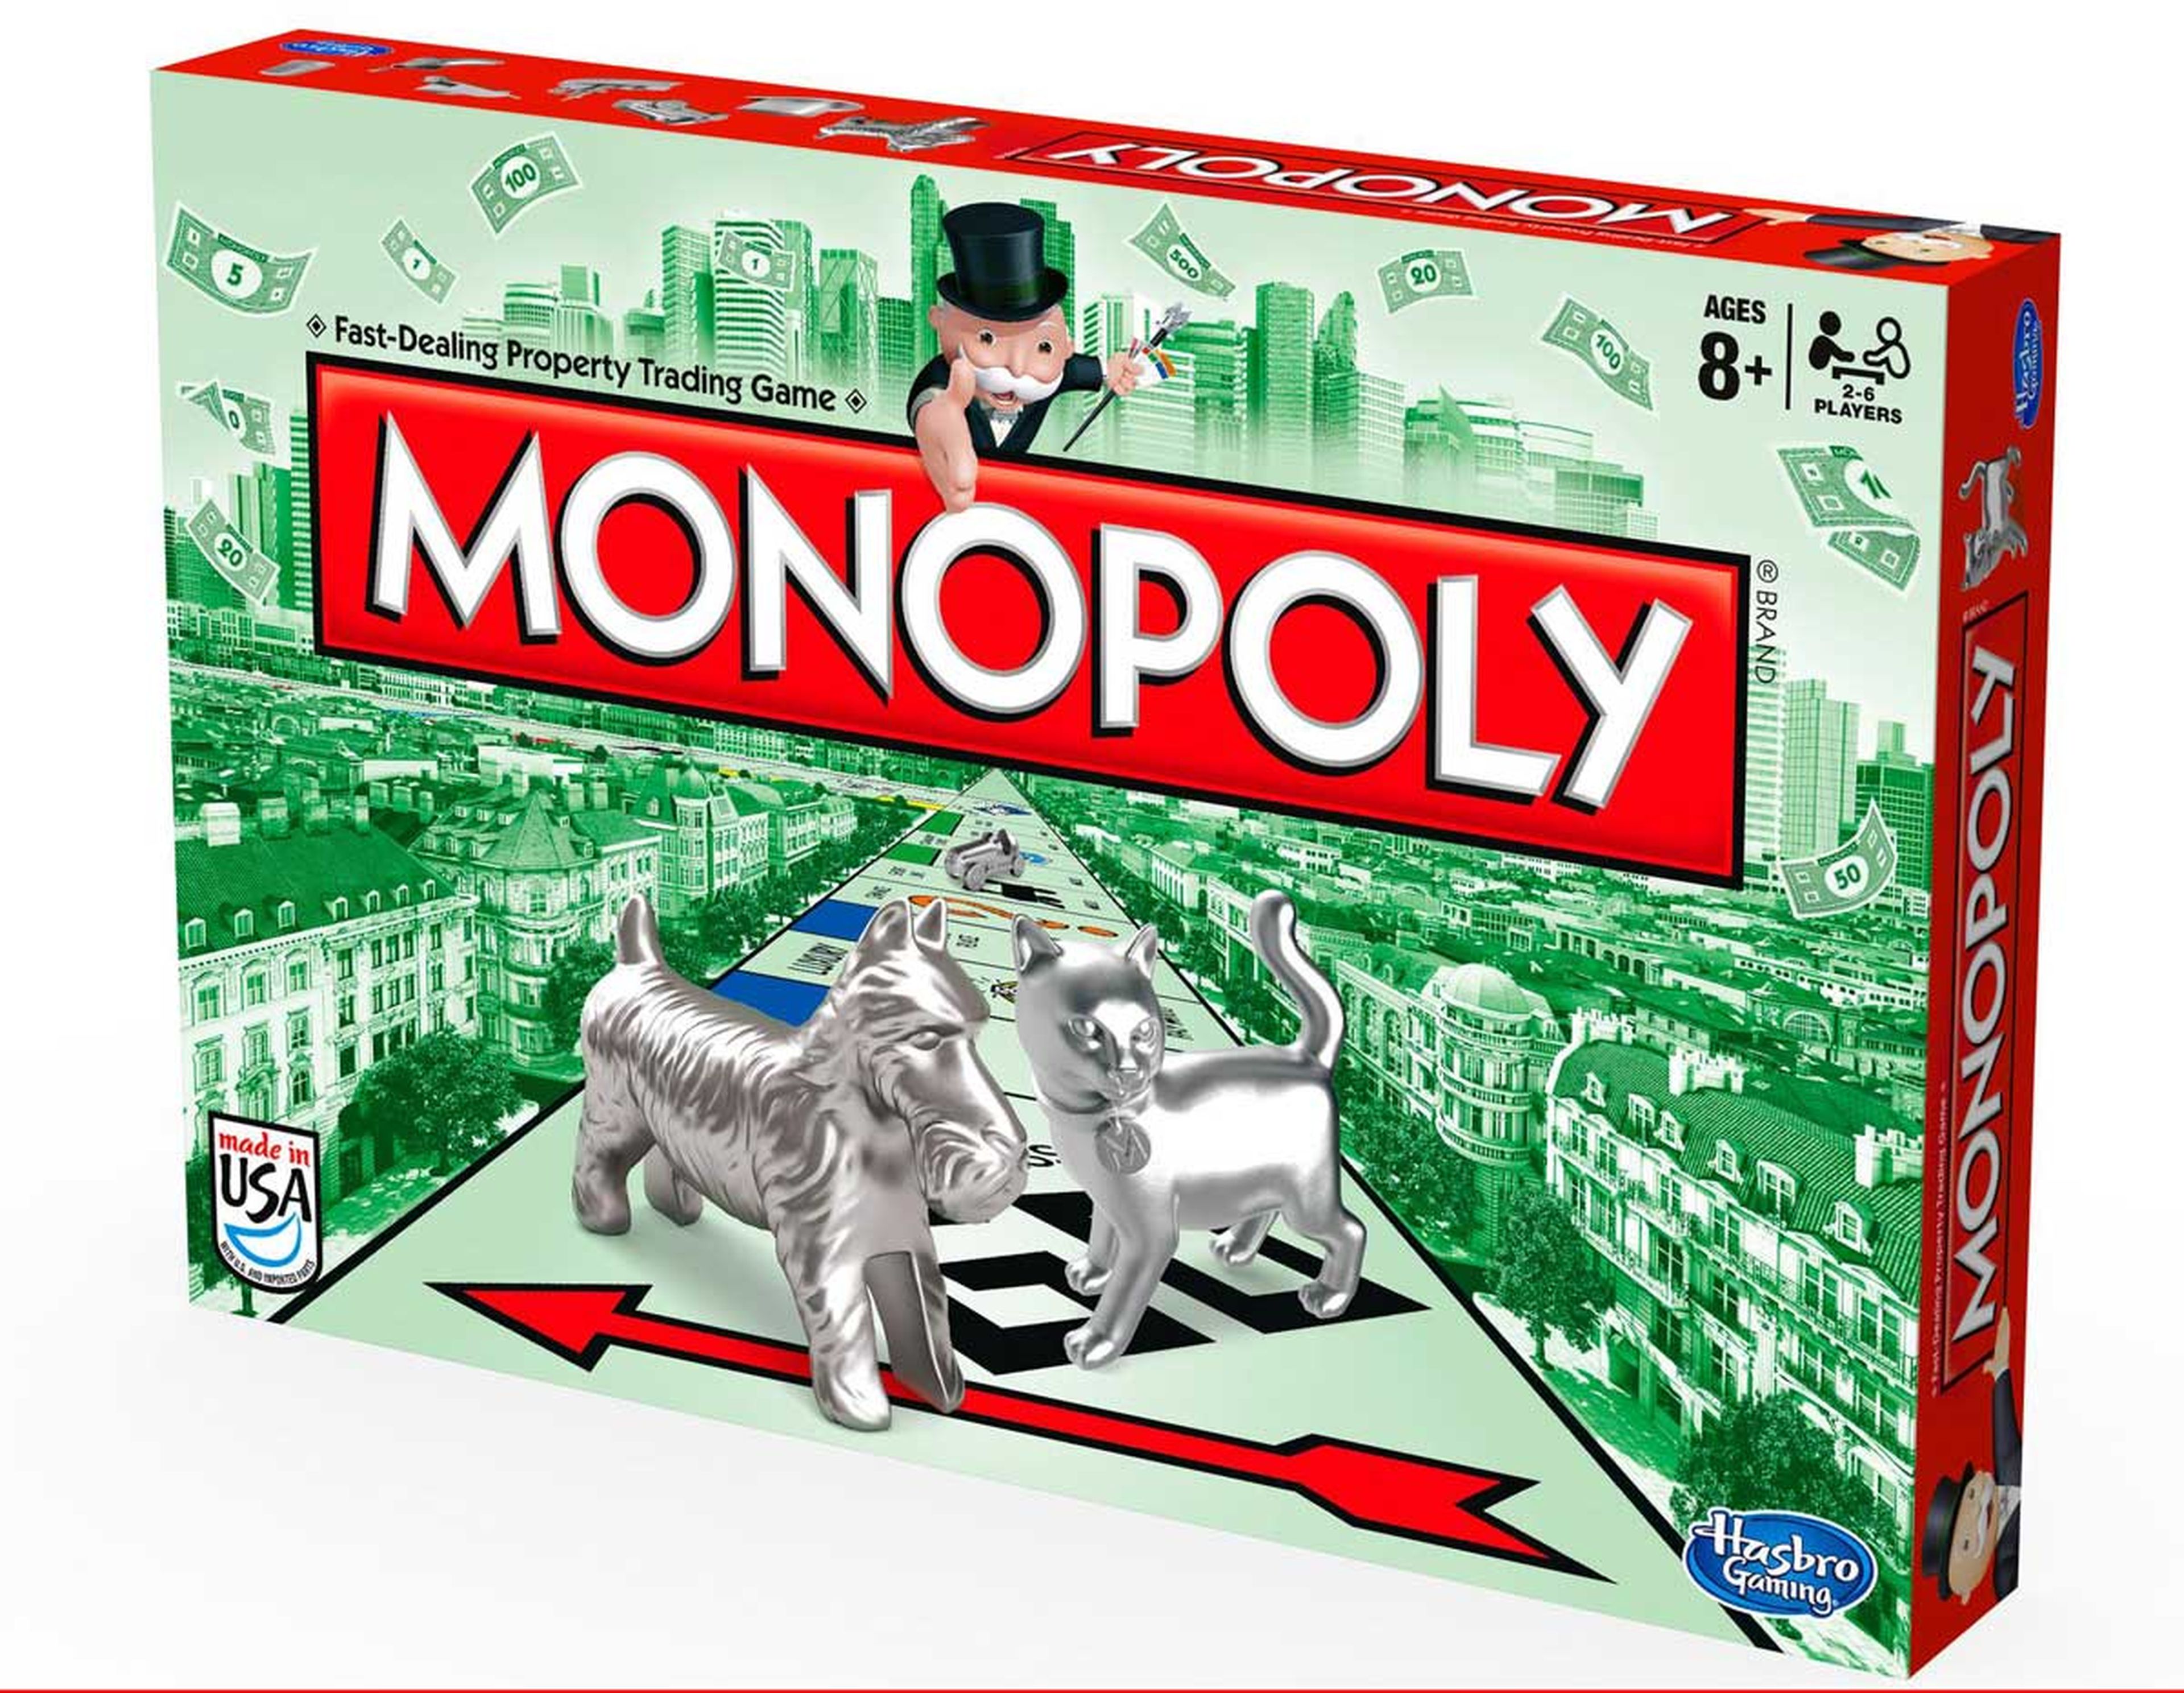 17. Monopoly